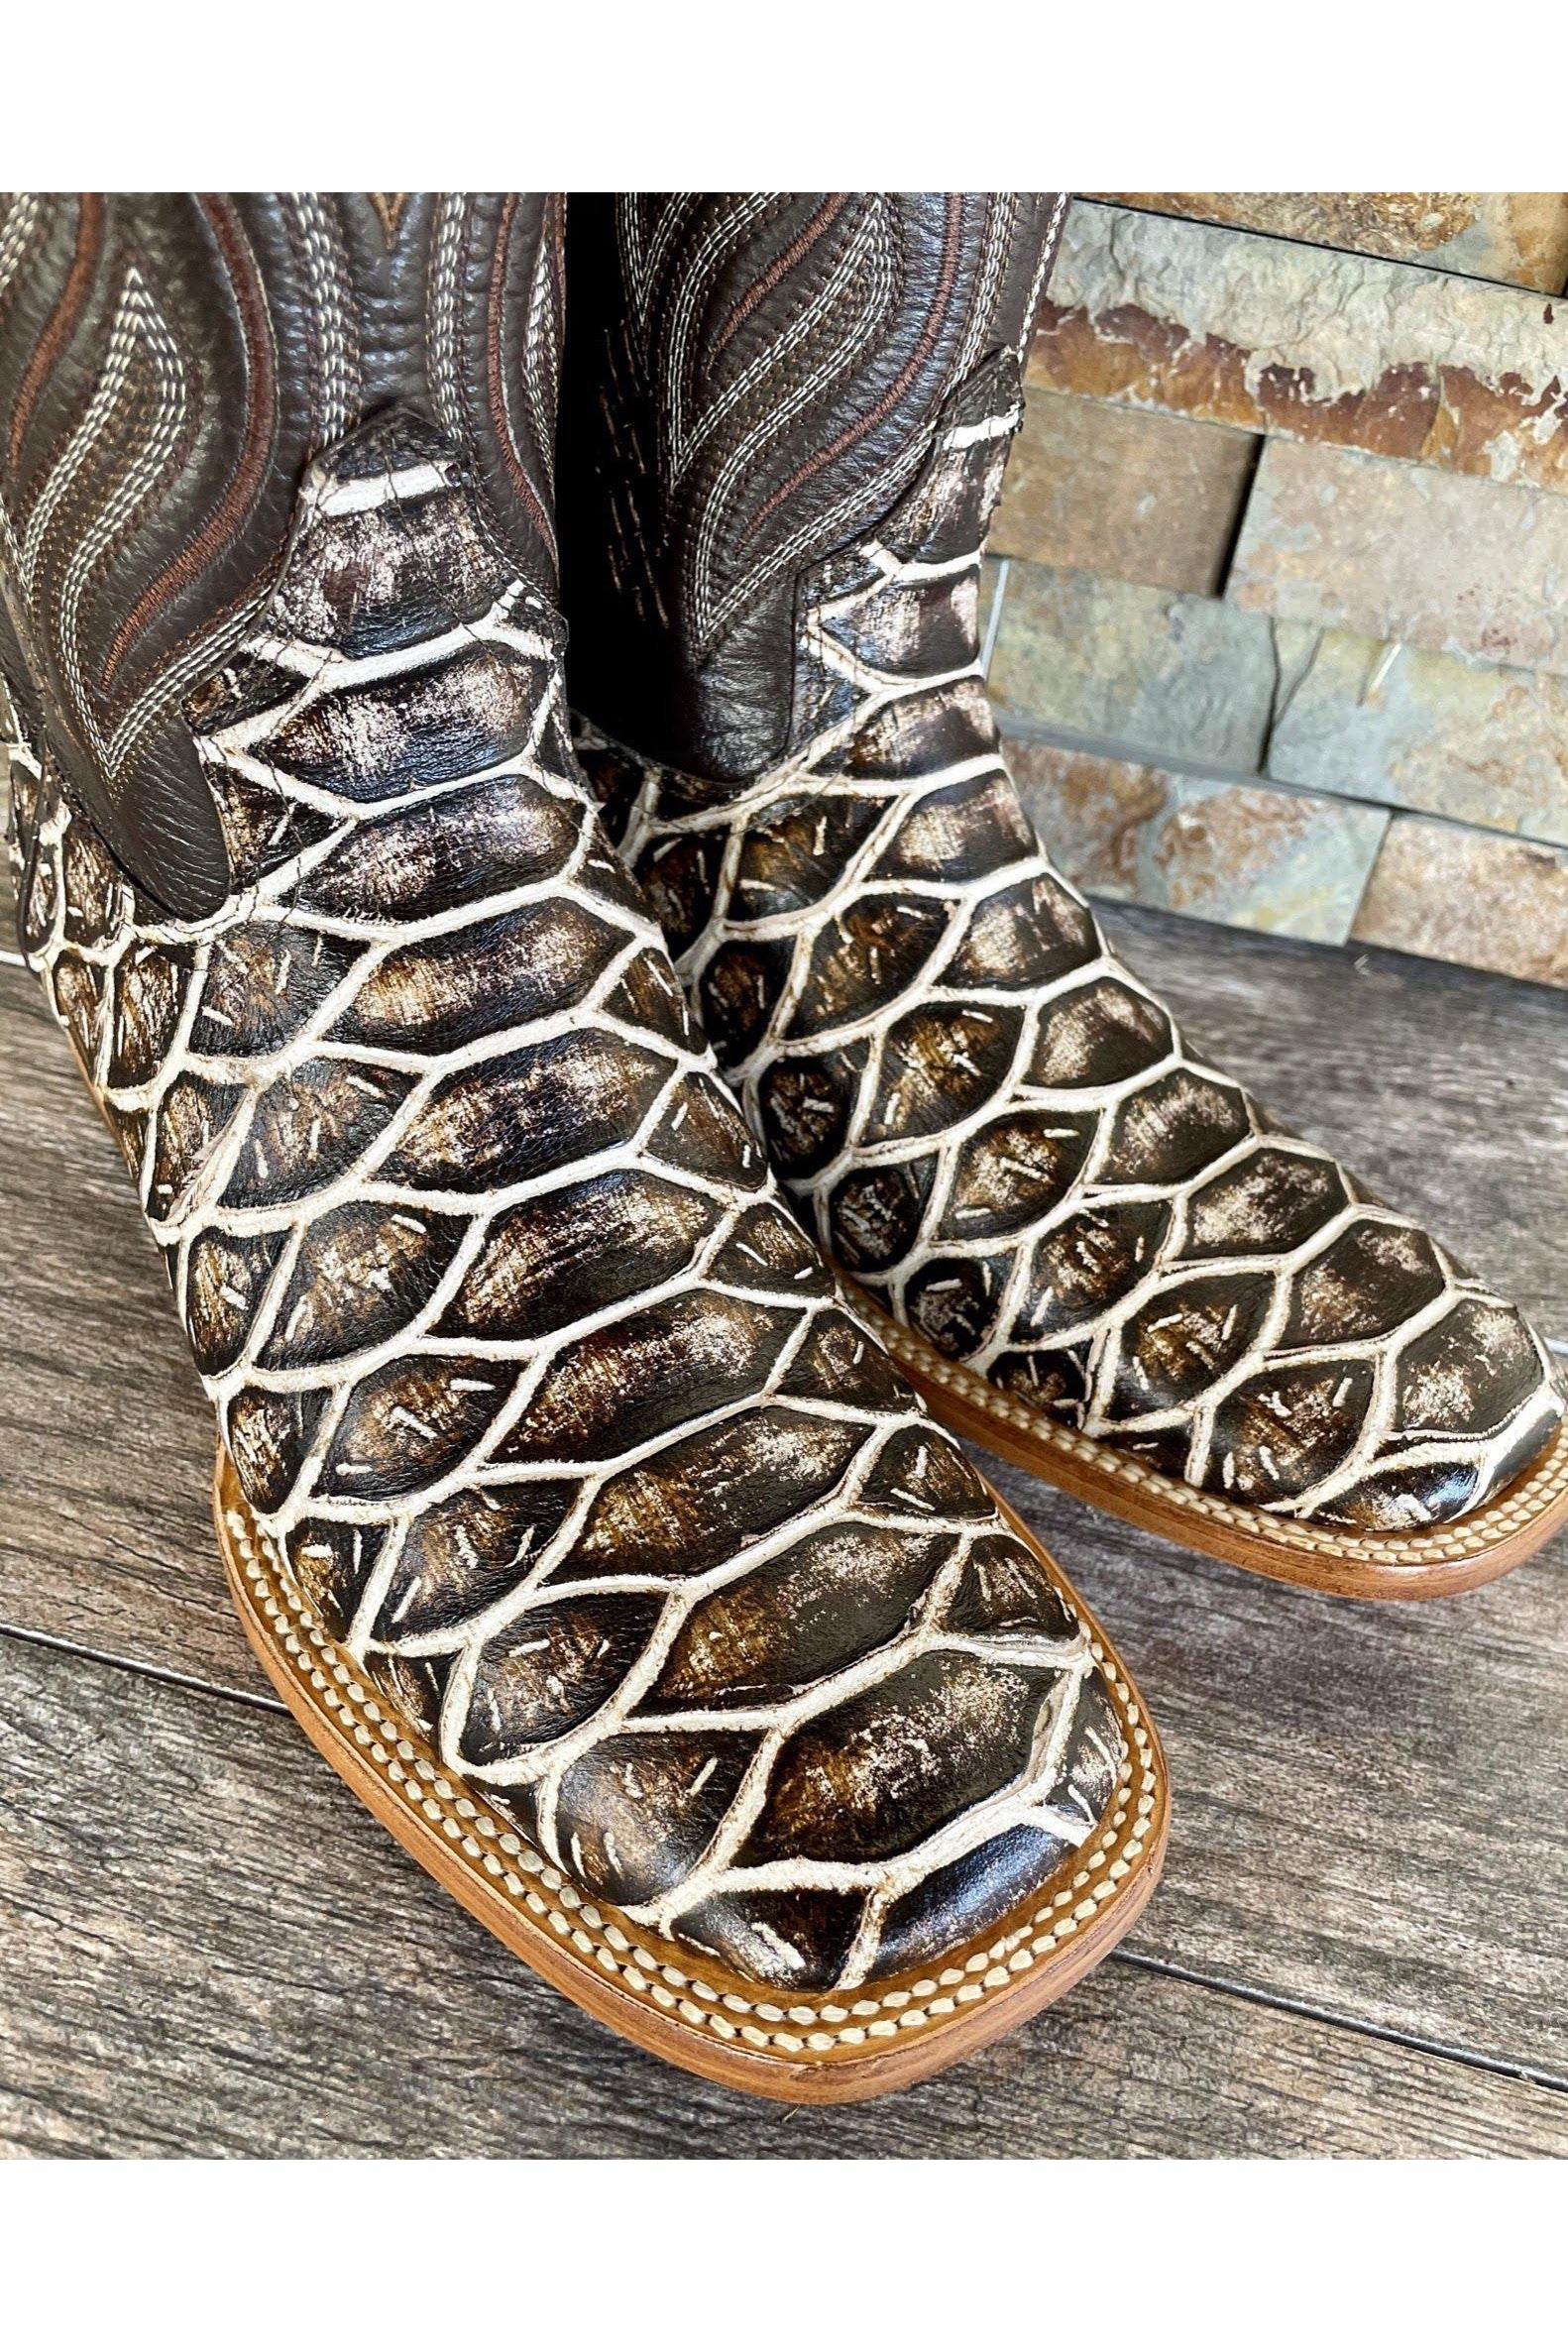 Cactus Exotic Men's Rustic Fish Boots